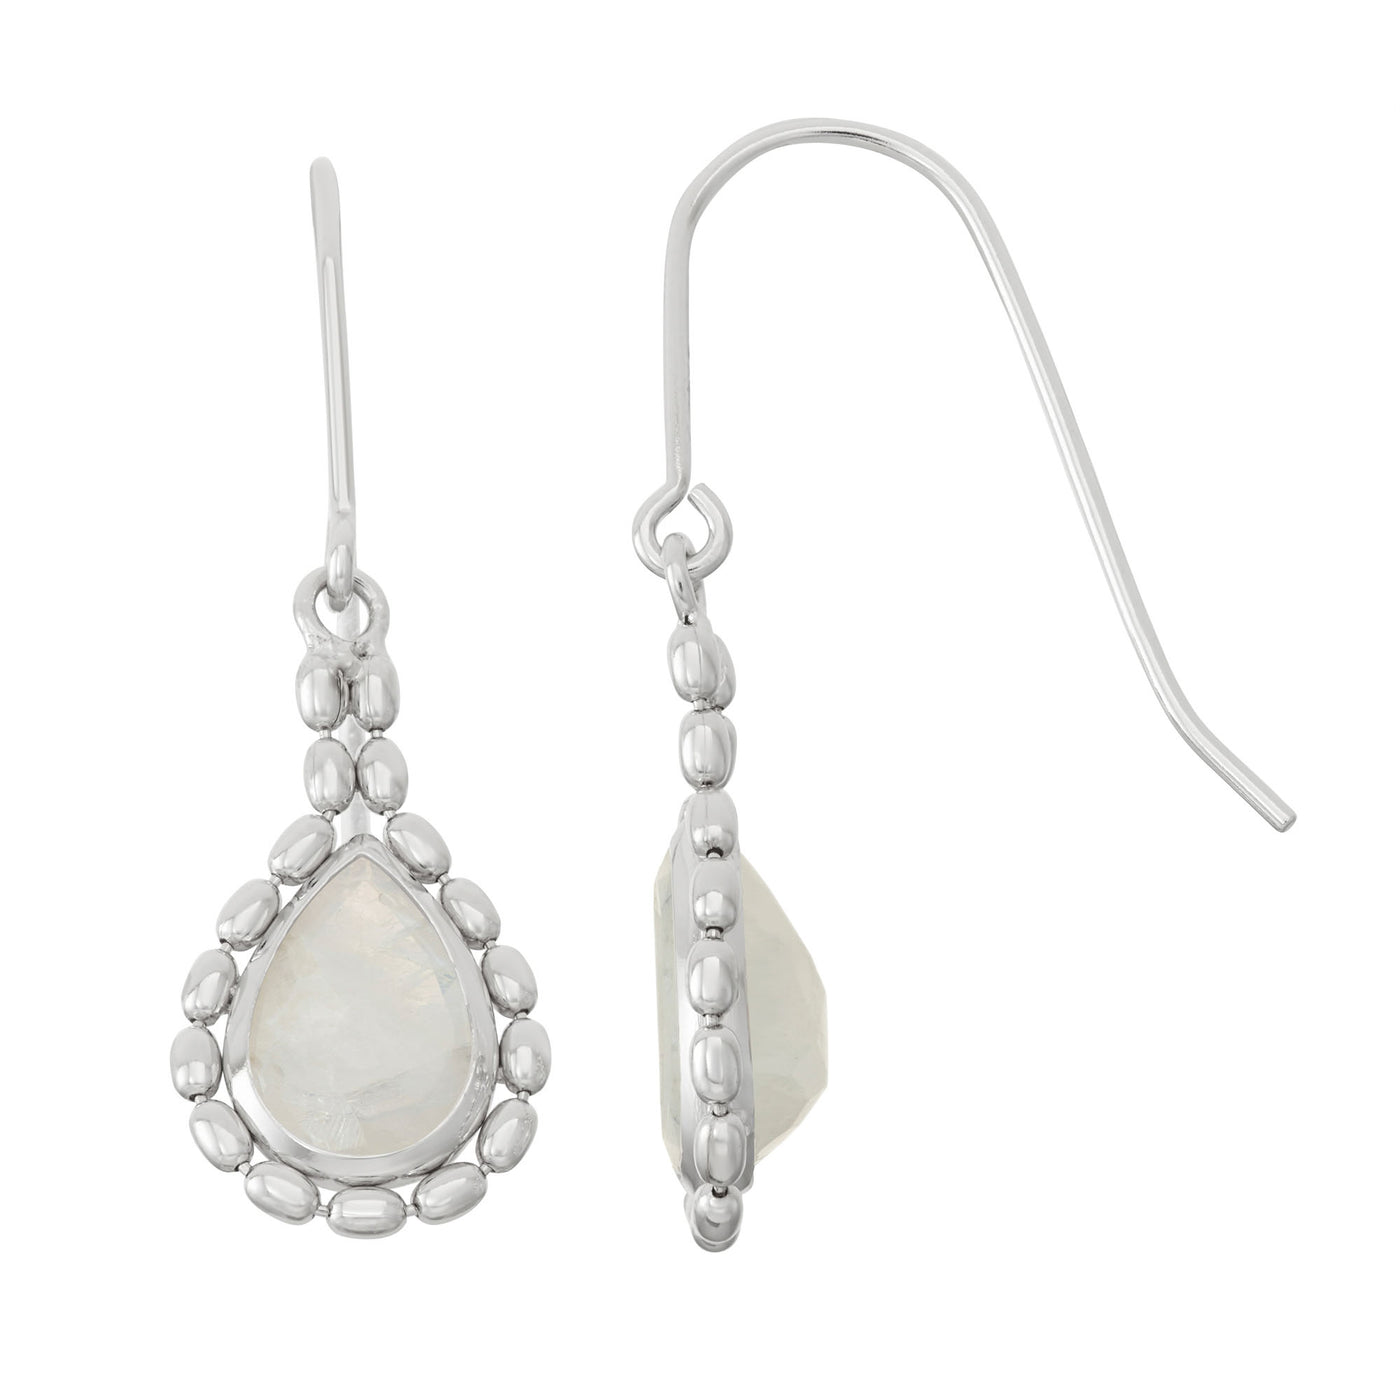 Rebecca Sloane Silver Beads Earring With Amethyst Teardrop Stone